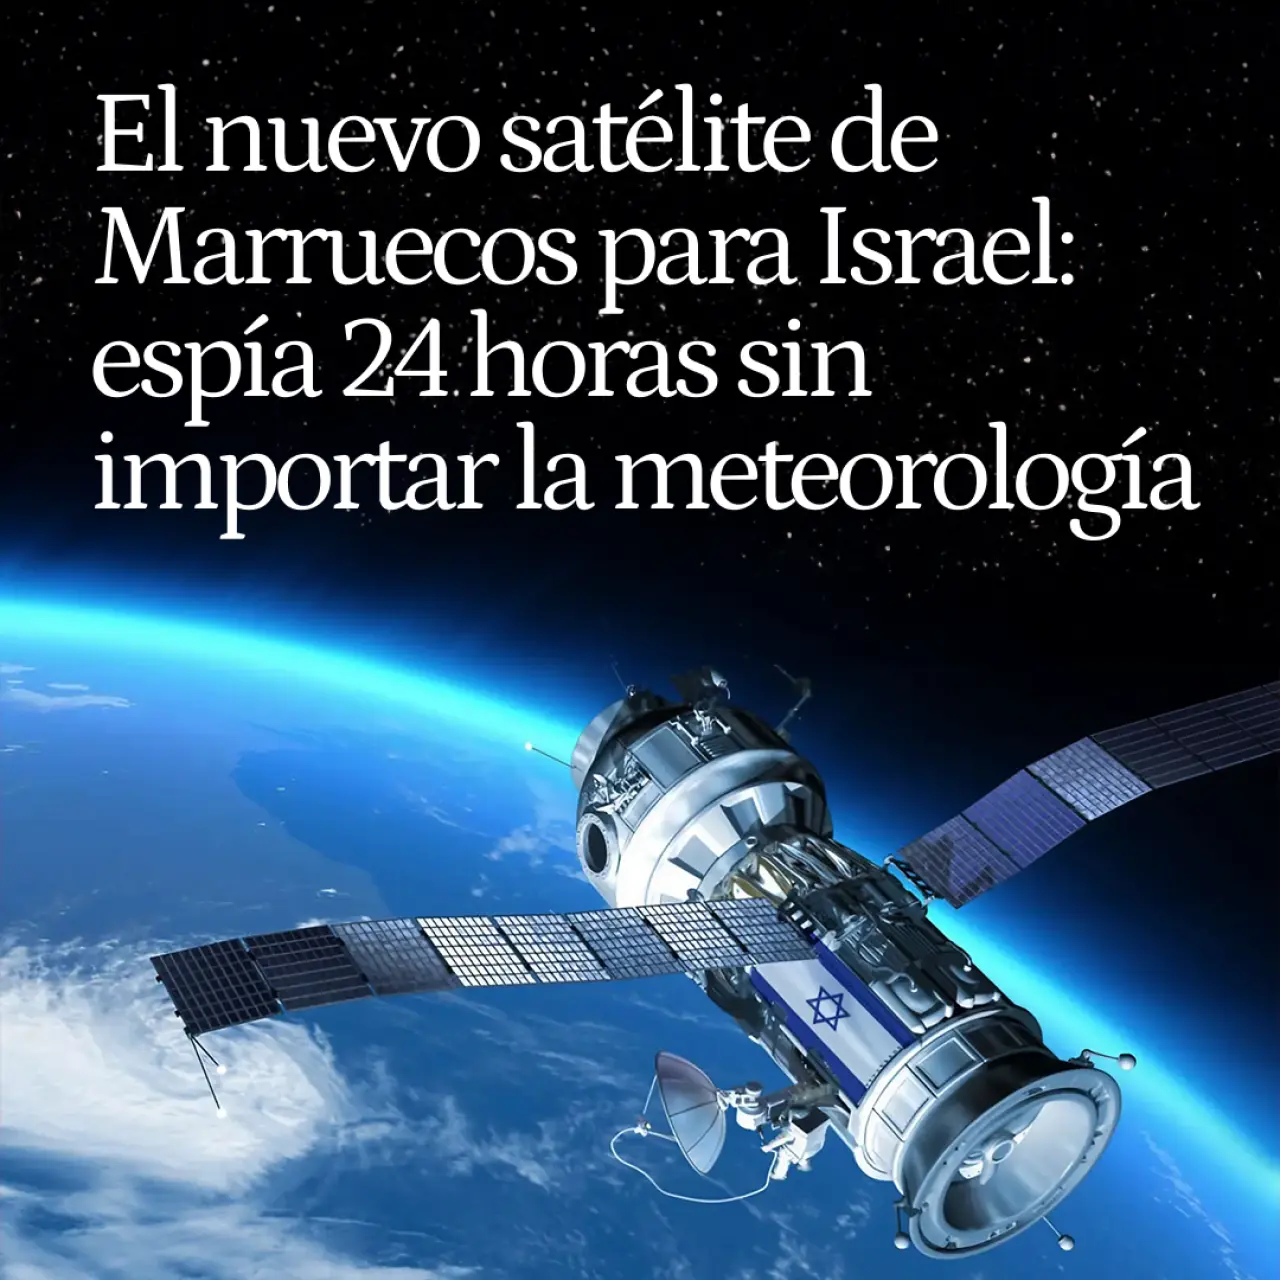 Así será el nuevo satélite de Marruecos que le dará Israel: espía 24 horas sin importar las condiciones meteorológicas